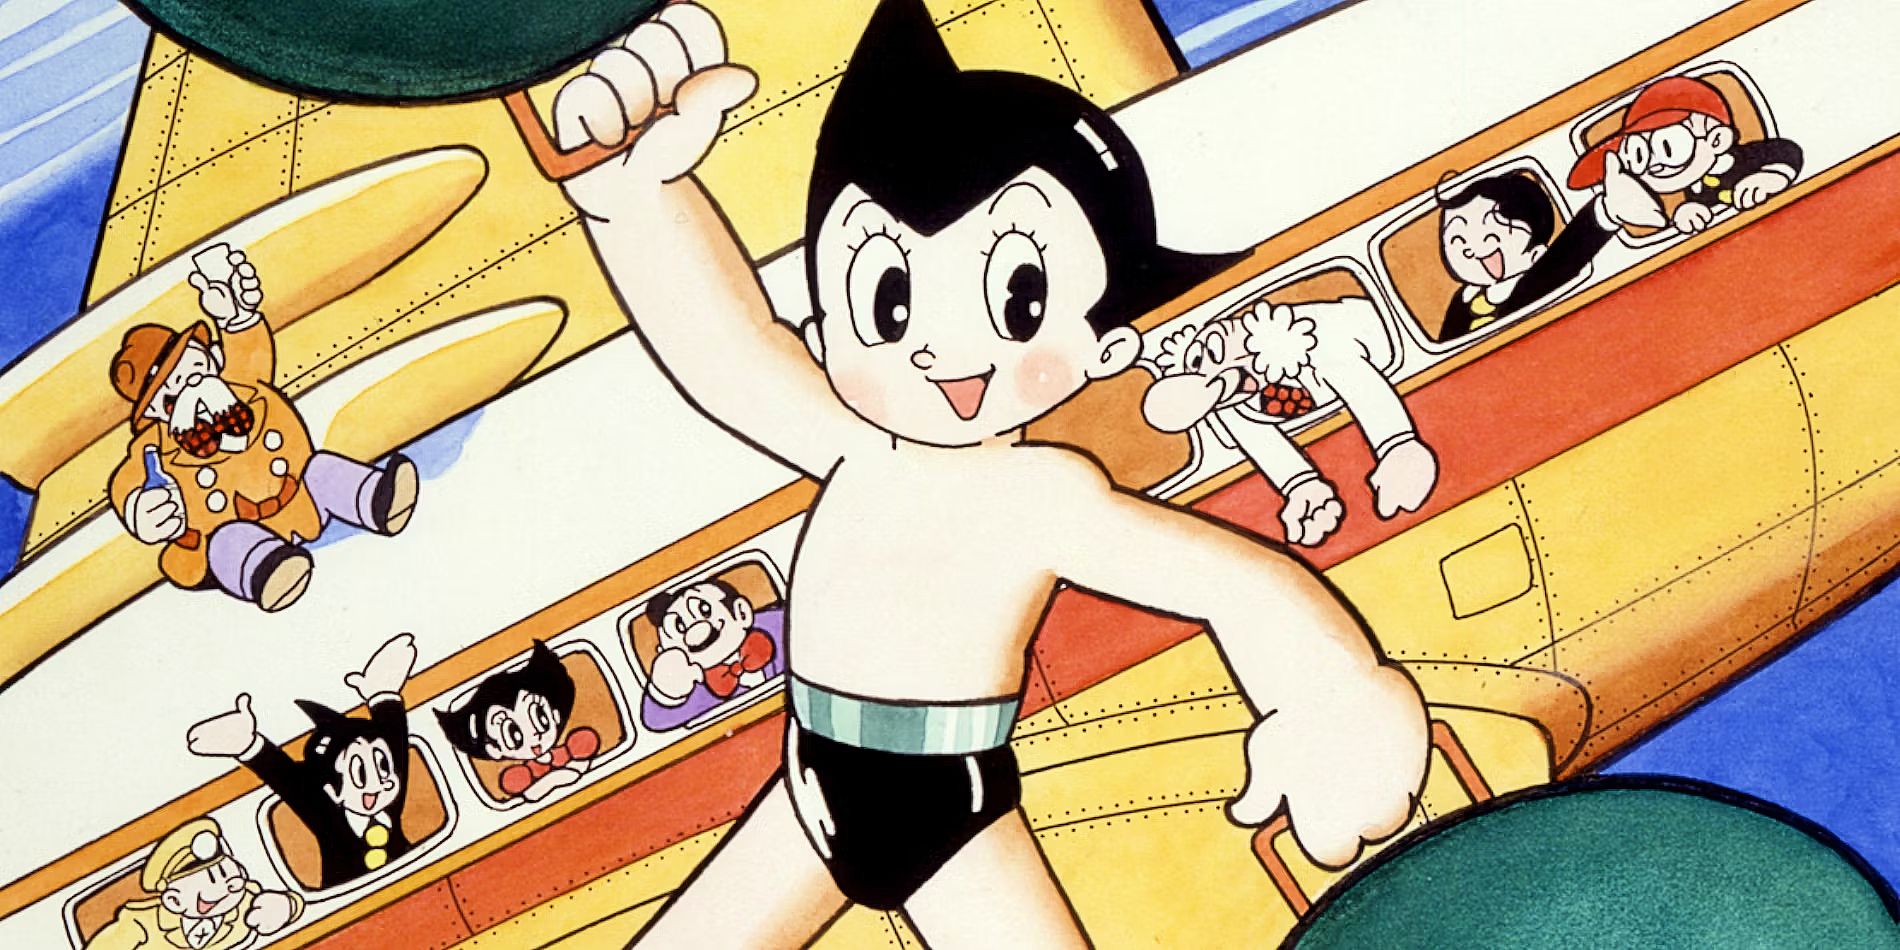 Astro Boy official manga artwork.